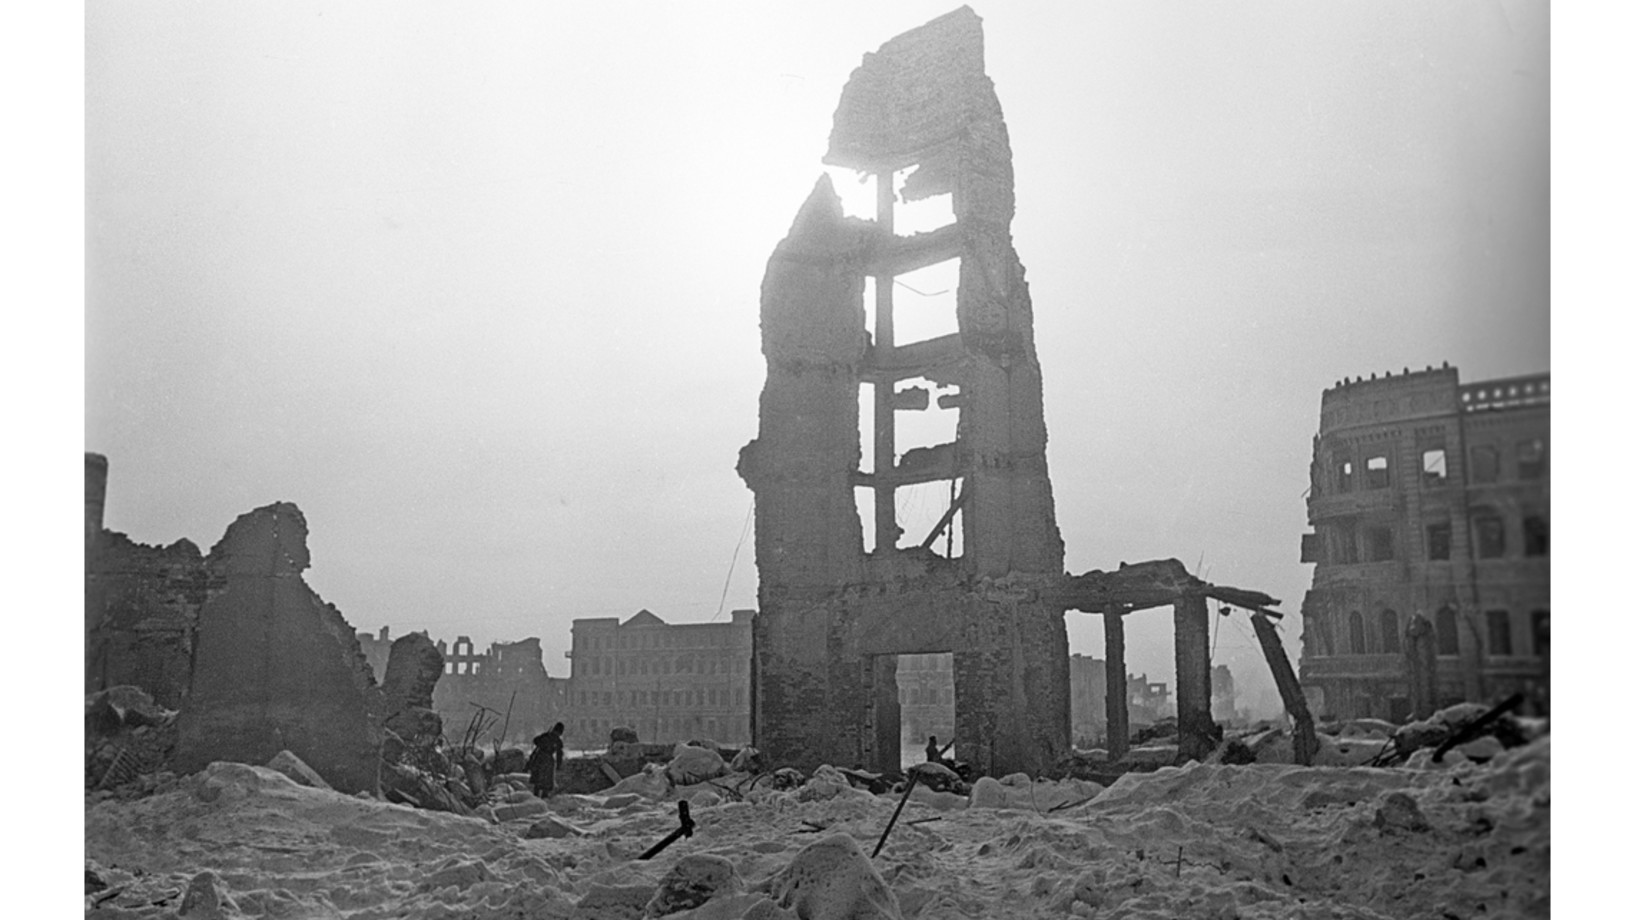 Russland feiert heute den 70. Jahrestag des Sieges der Roten Armee über die Deutschen in der Schlacht von Stalingrad.